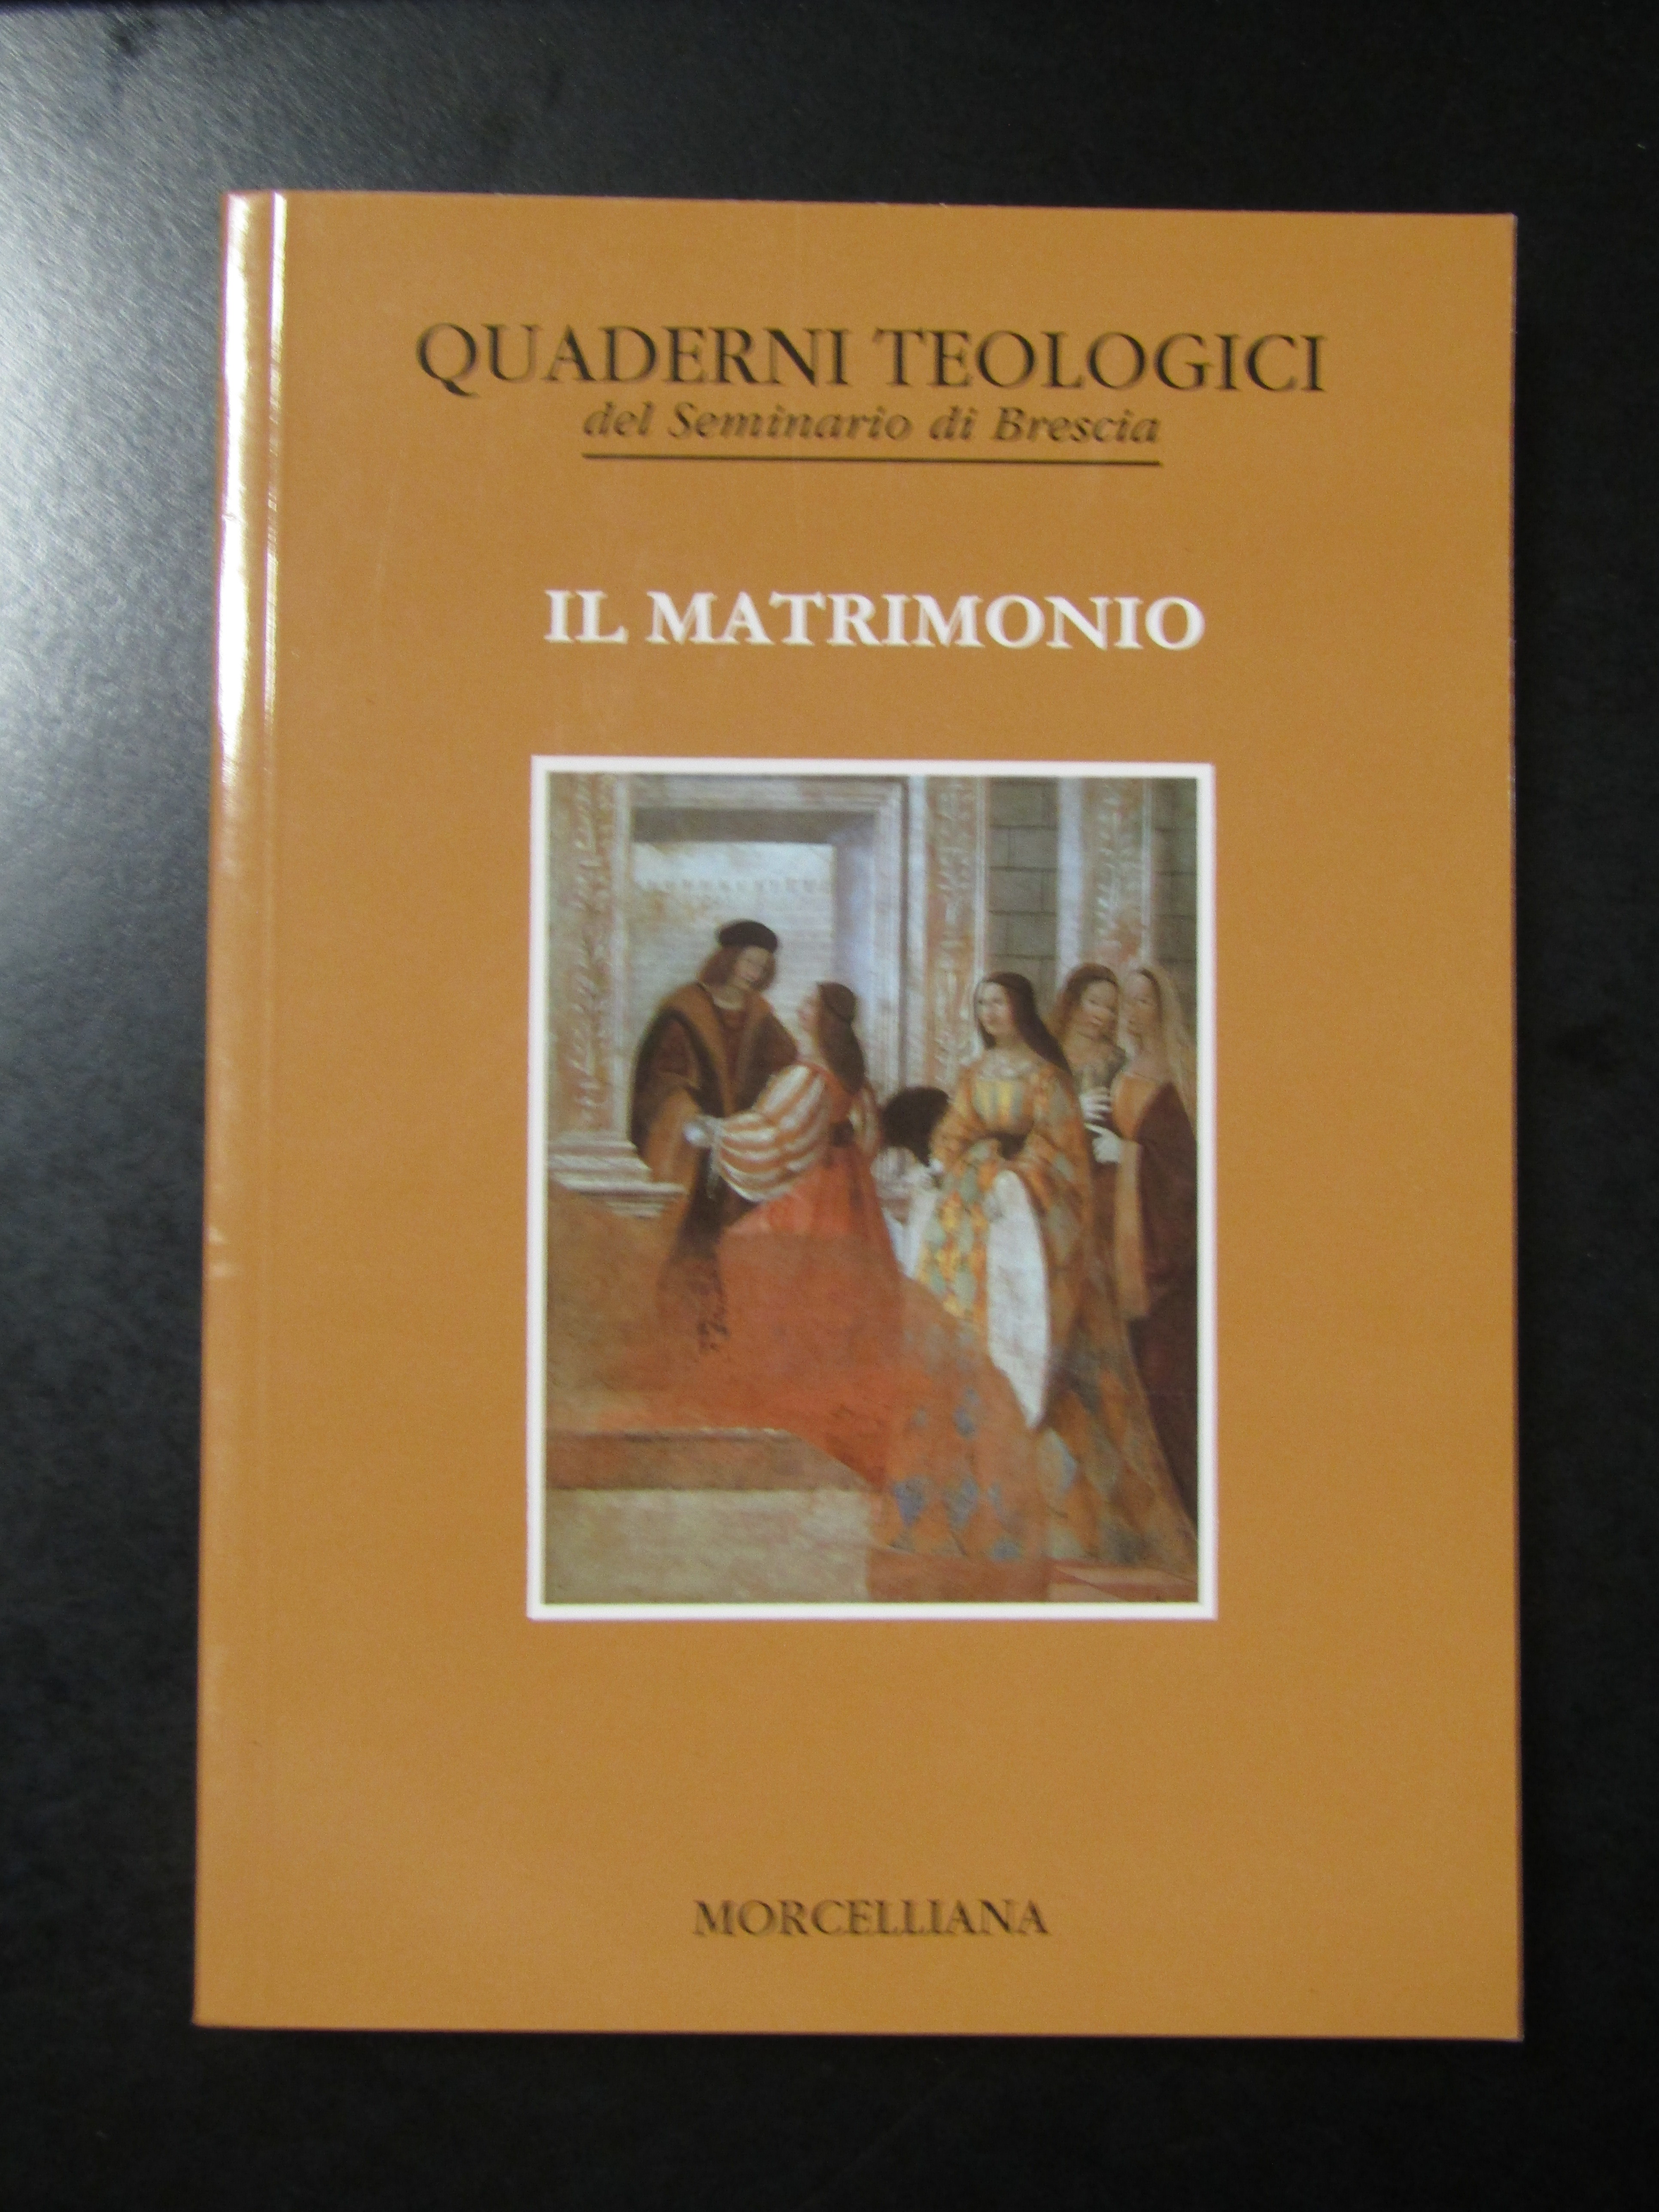 Quaderno teologici edl Seminario di Brescia. Il matrimonio. Morcelliana 1999.